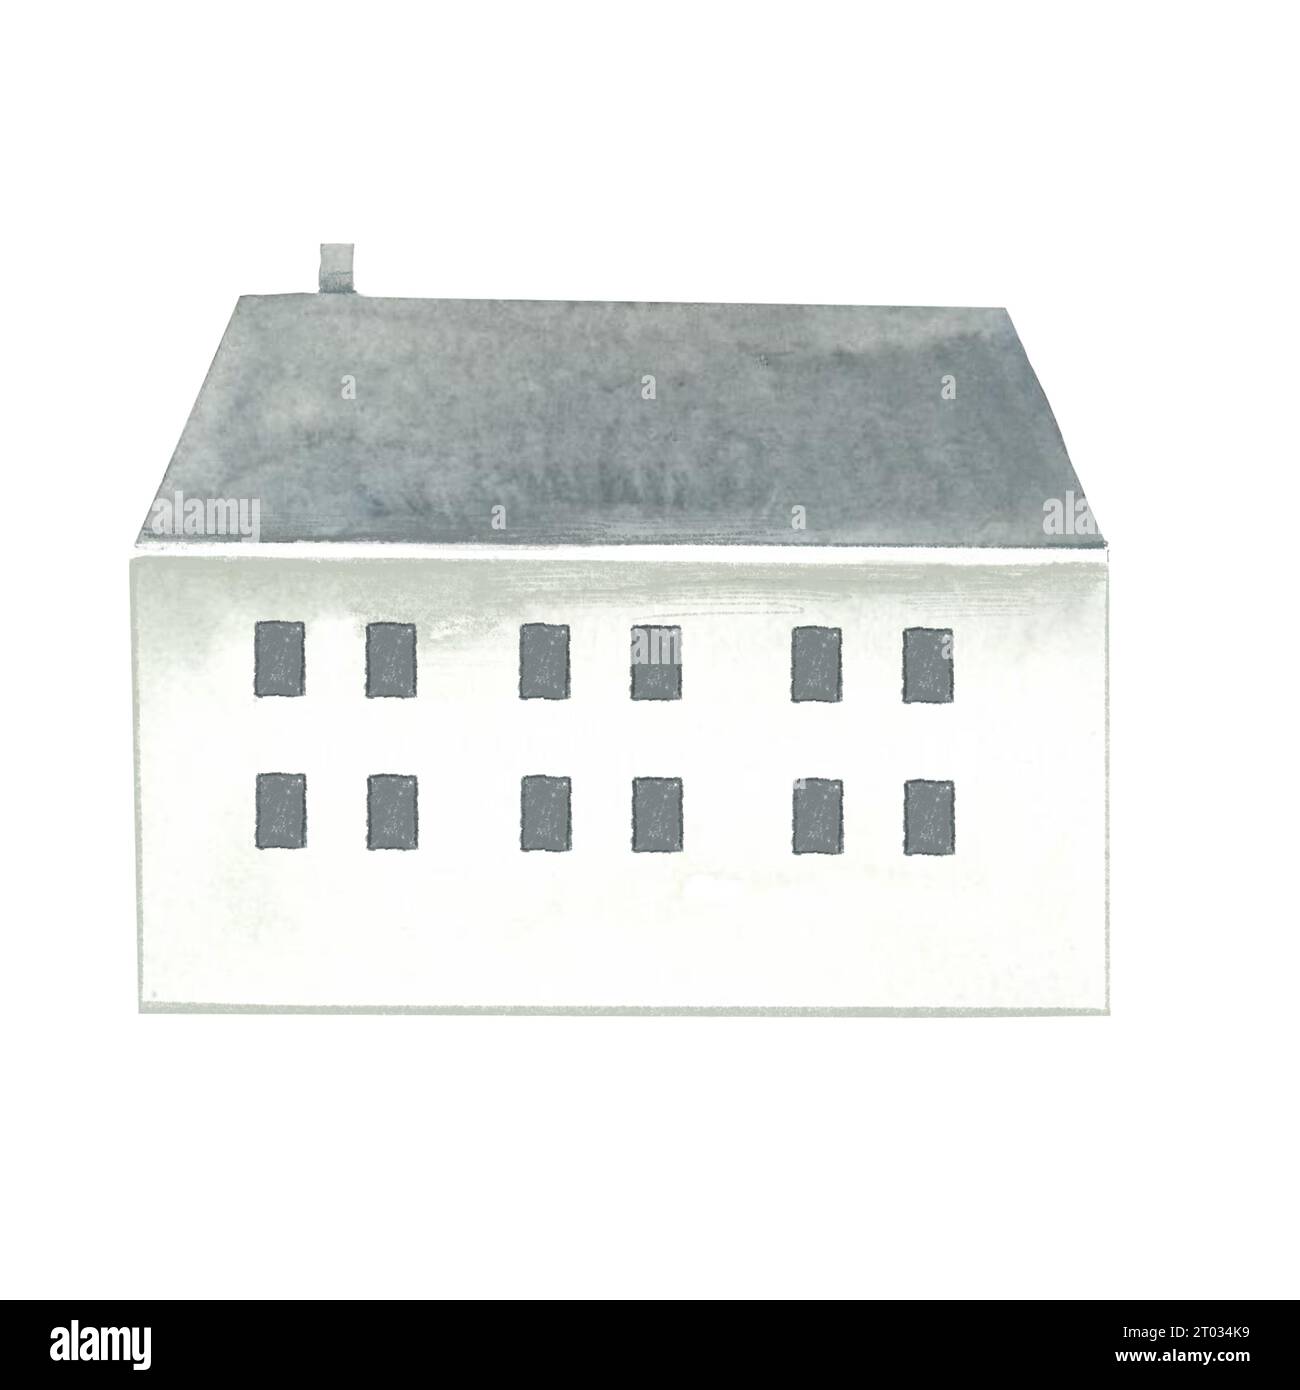 gli acquerelli minimalisti scandinavi dipinti a mano ospitano immagini isolate di case Foto Stock